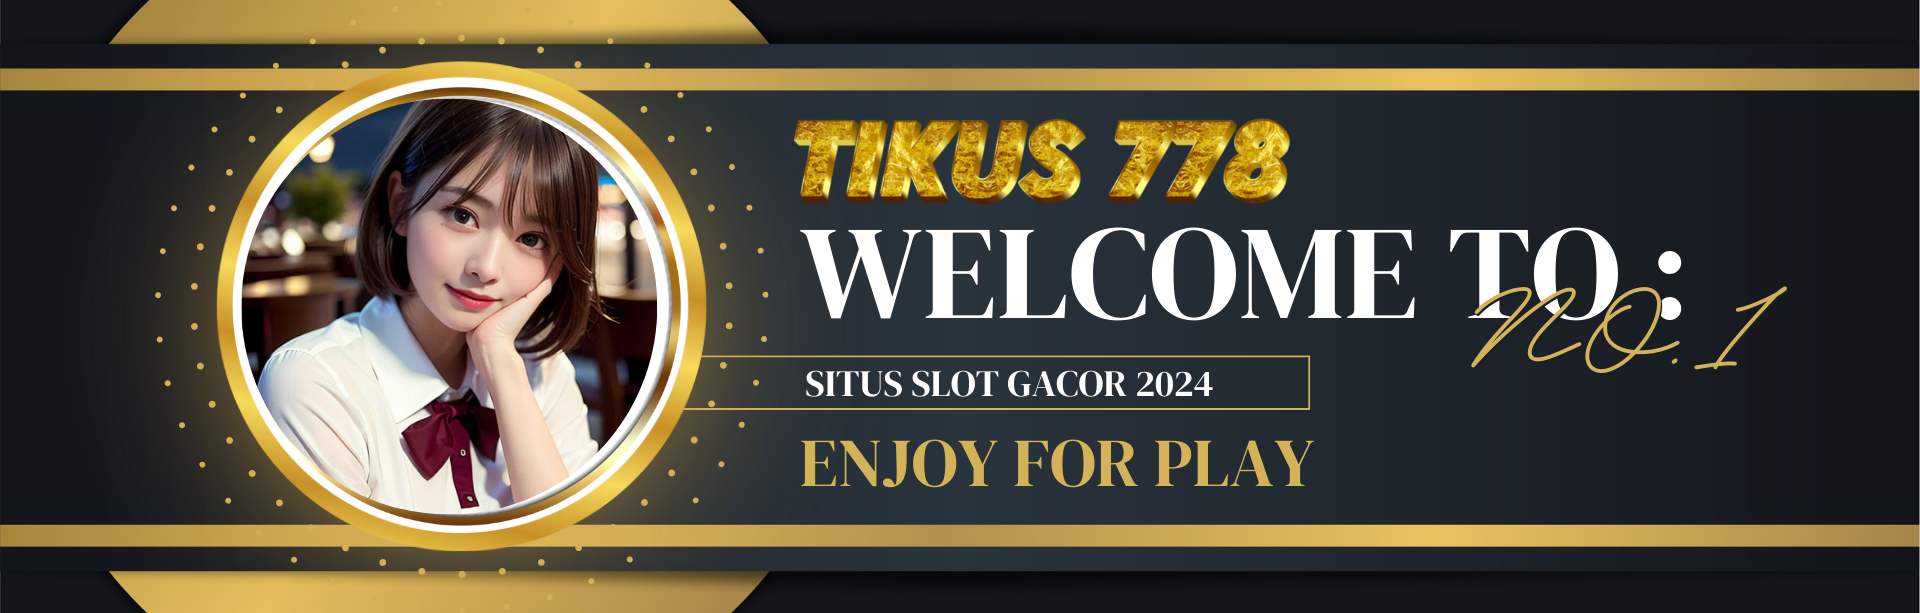 TIKUS778: Kumpulan Daftar Situs Slot Gacor dan Slot Online Dana Terpercaya No1